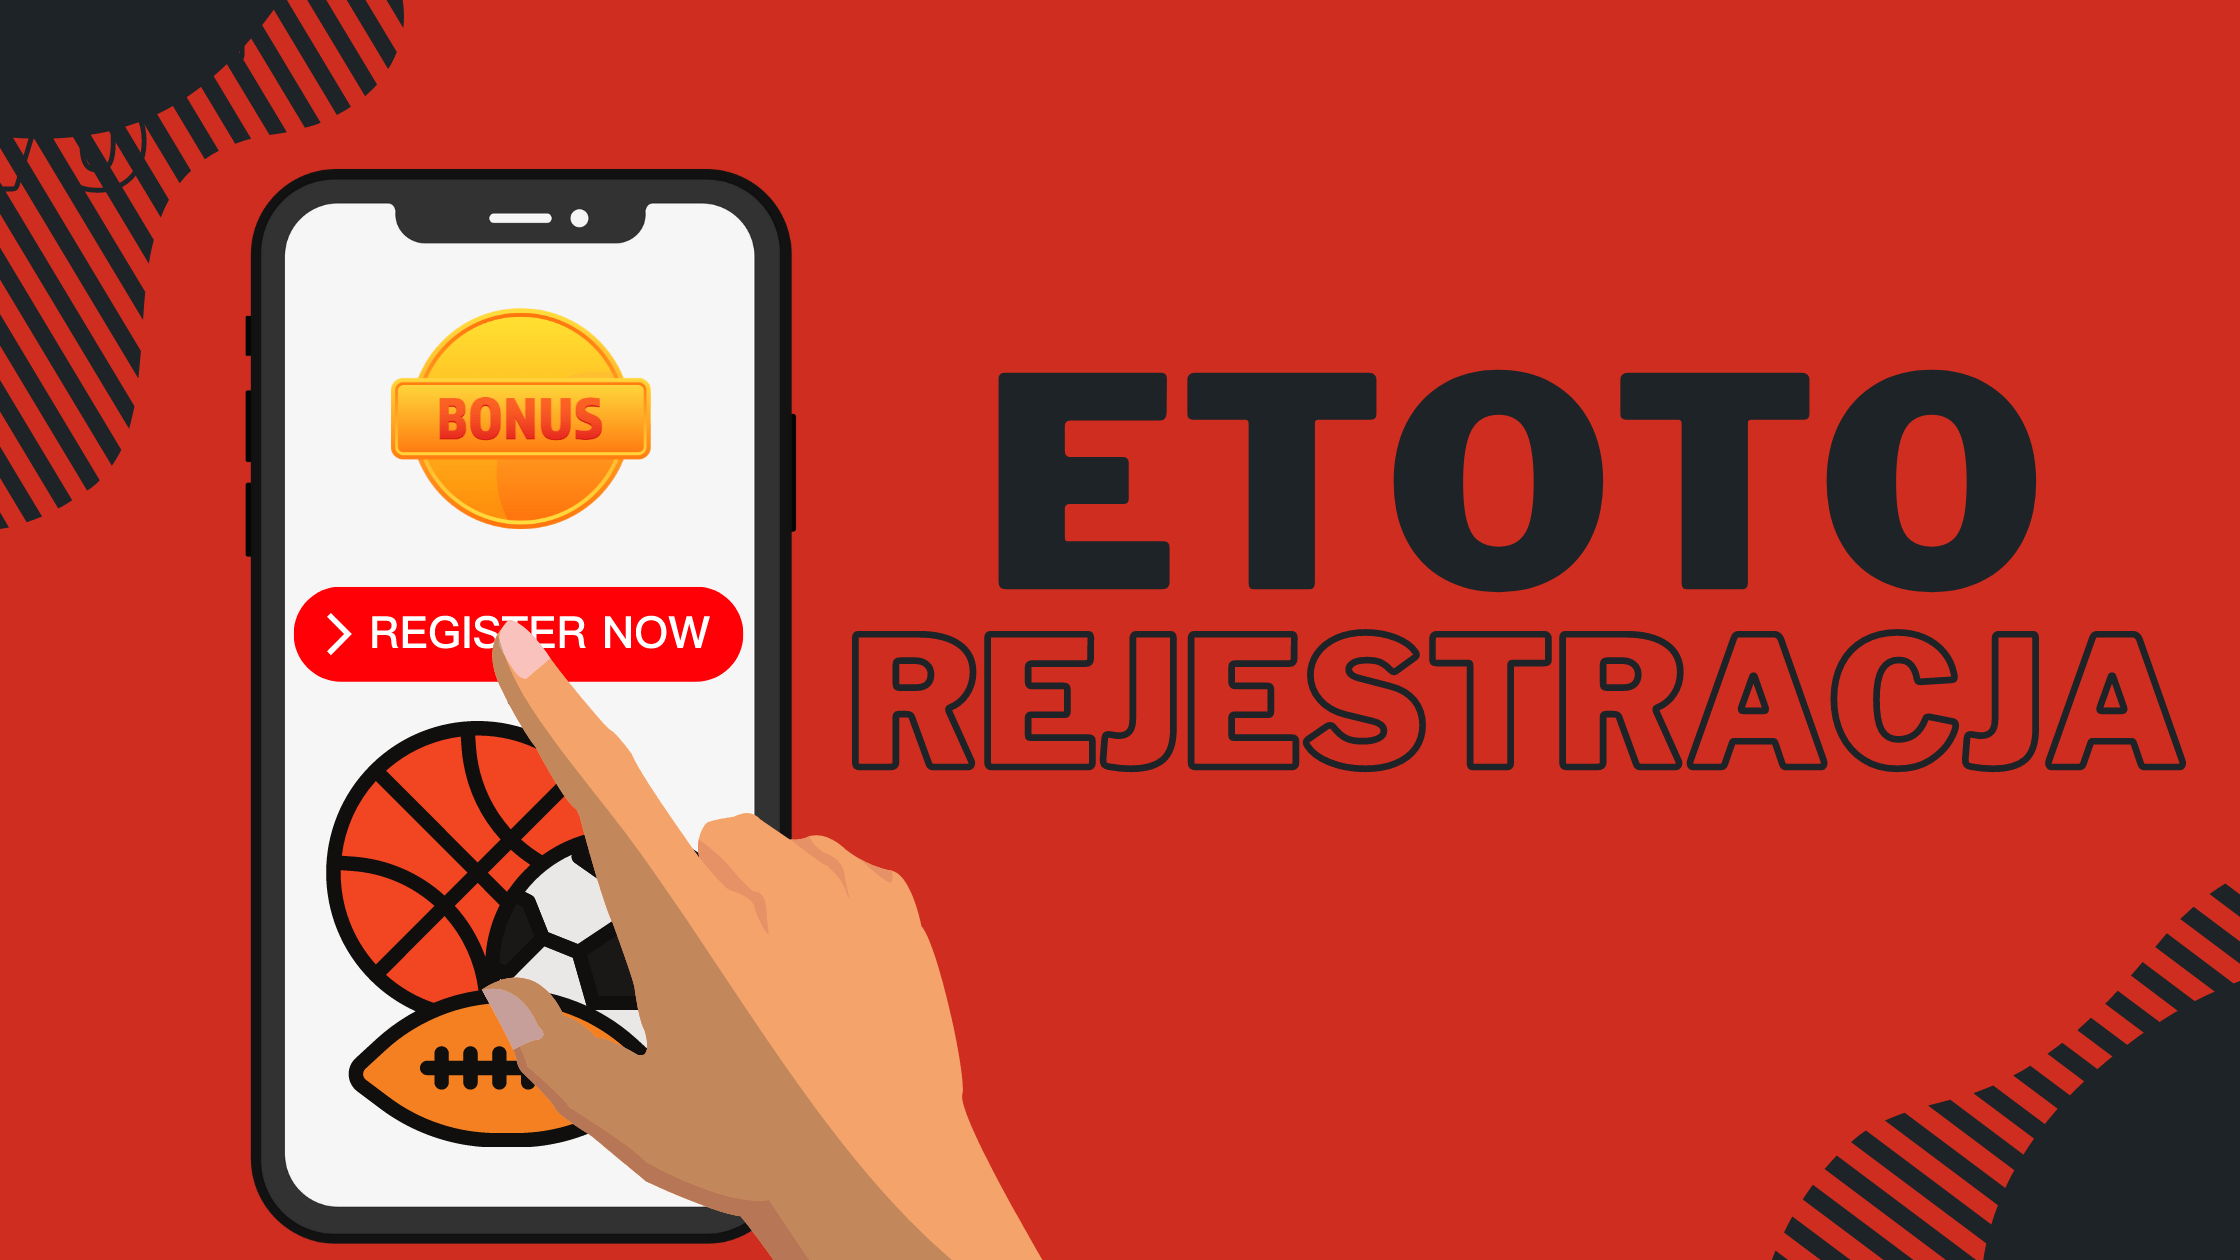 Rejestracja nowego konta na Etoto